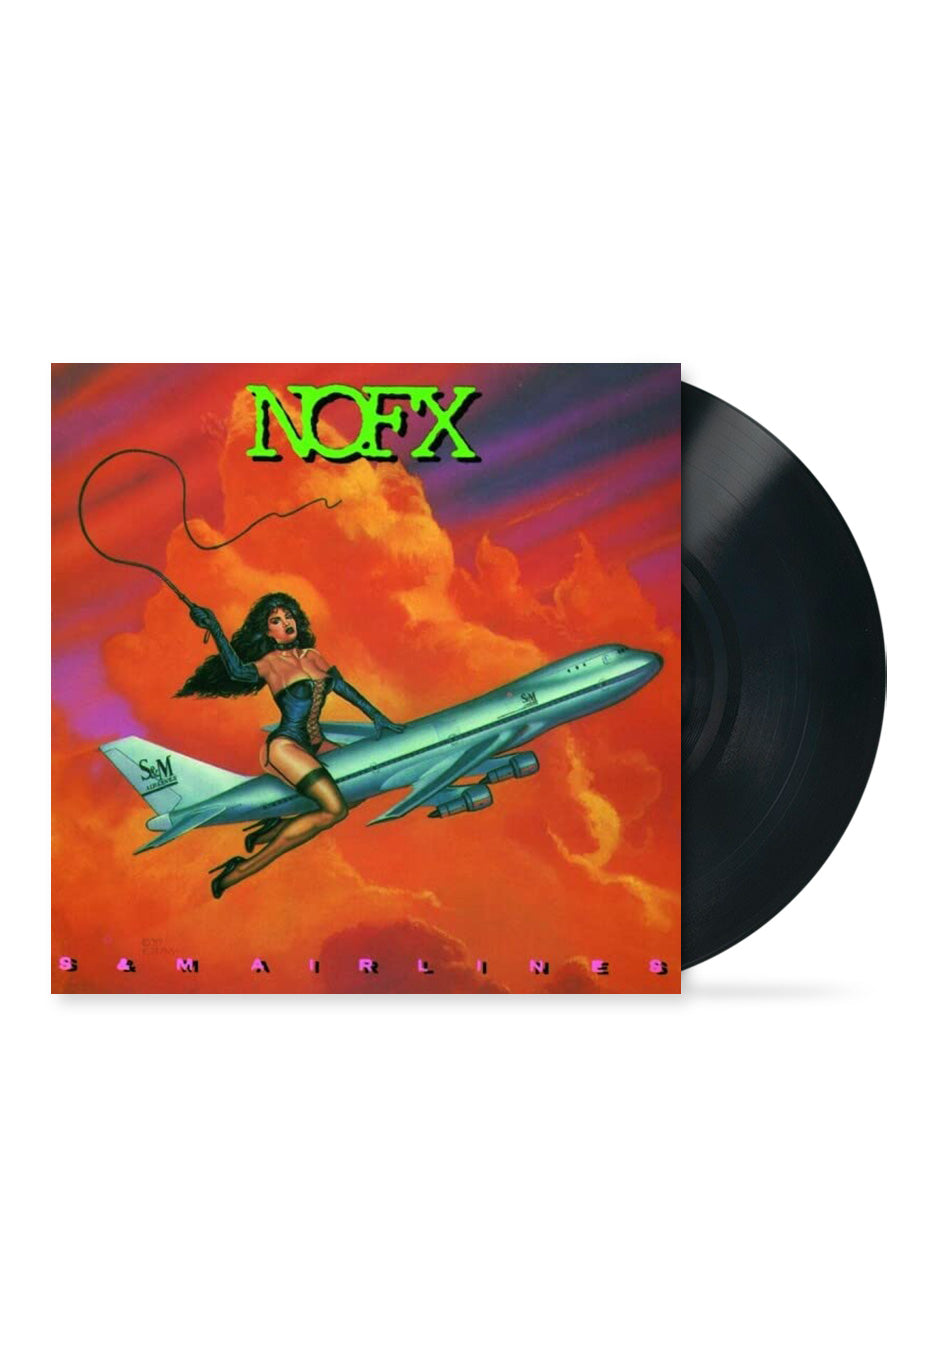 NOFX - S&M Airlines (Reissue) - Vinyl